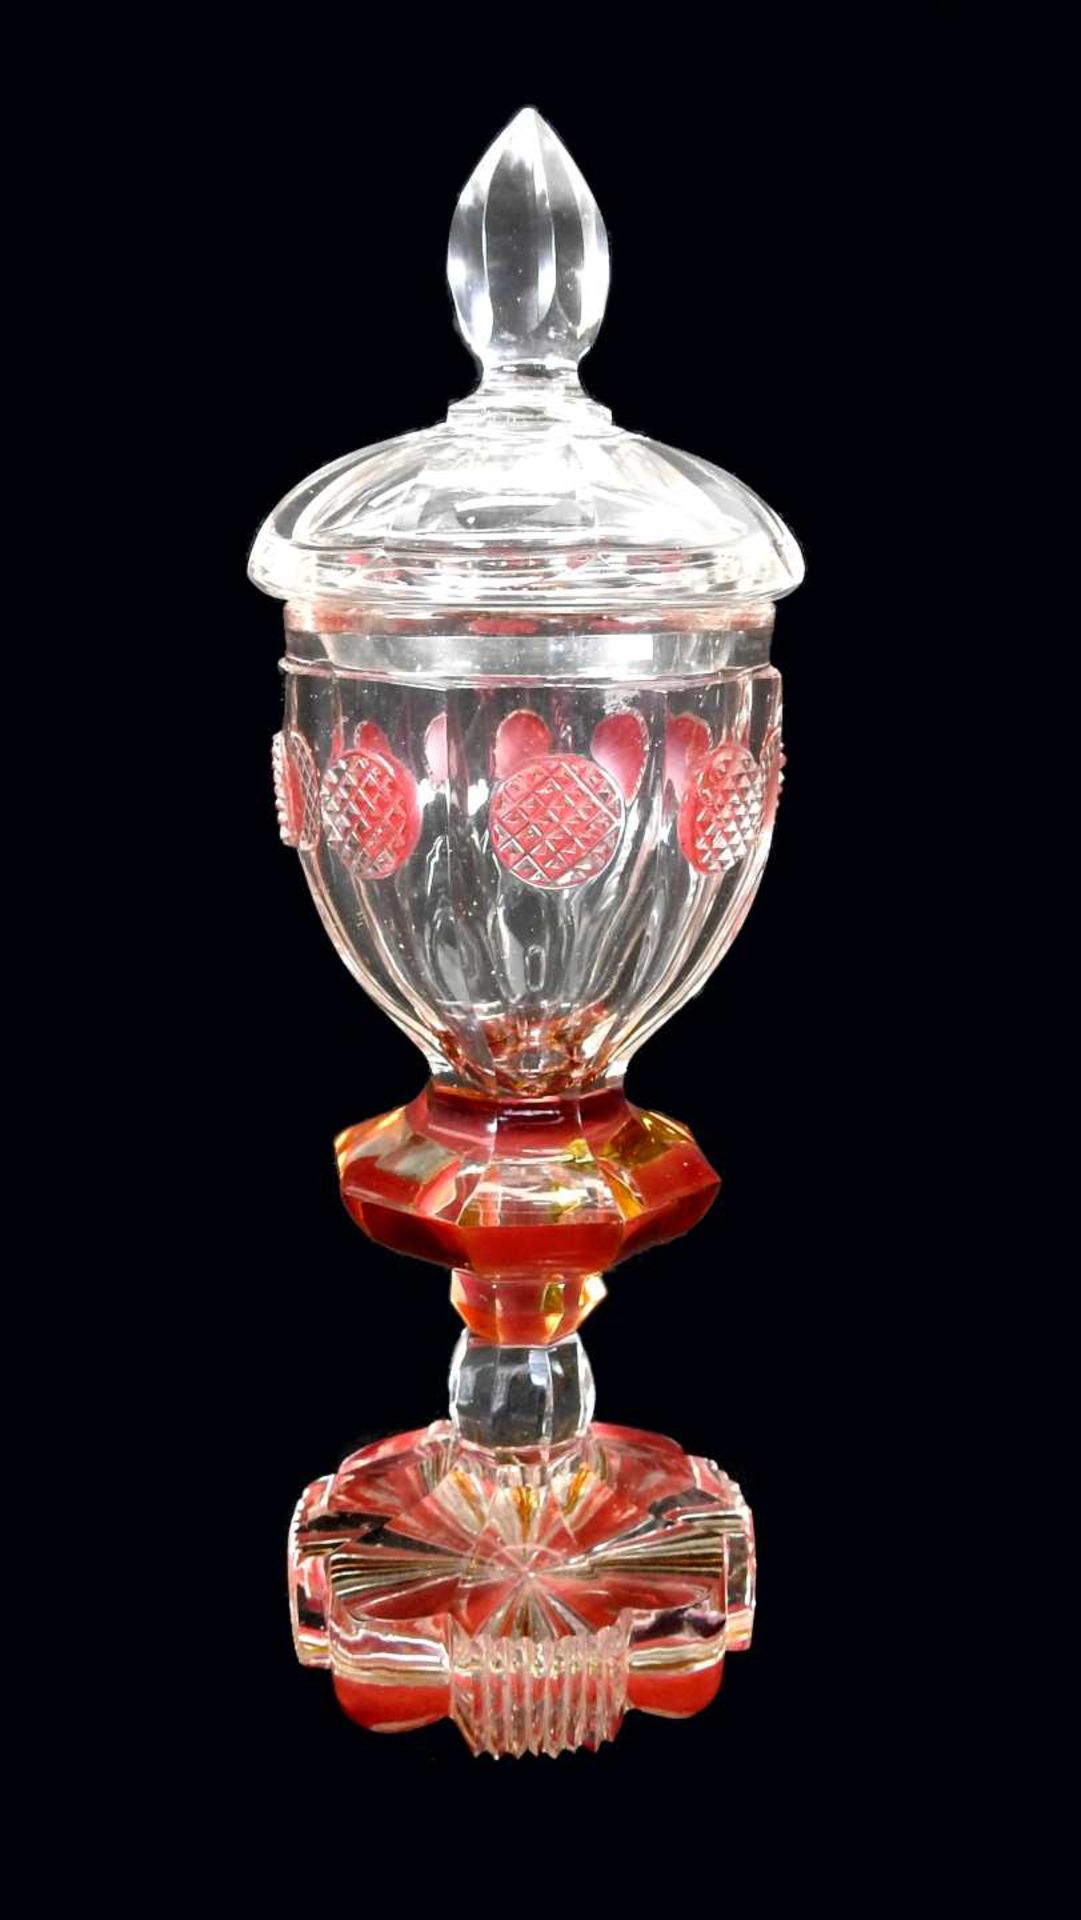 Pokal aus Kristallglas Kristallglas, farblos und teilweise rosa bemalt. Mehrpassiger W